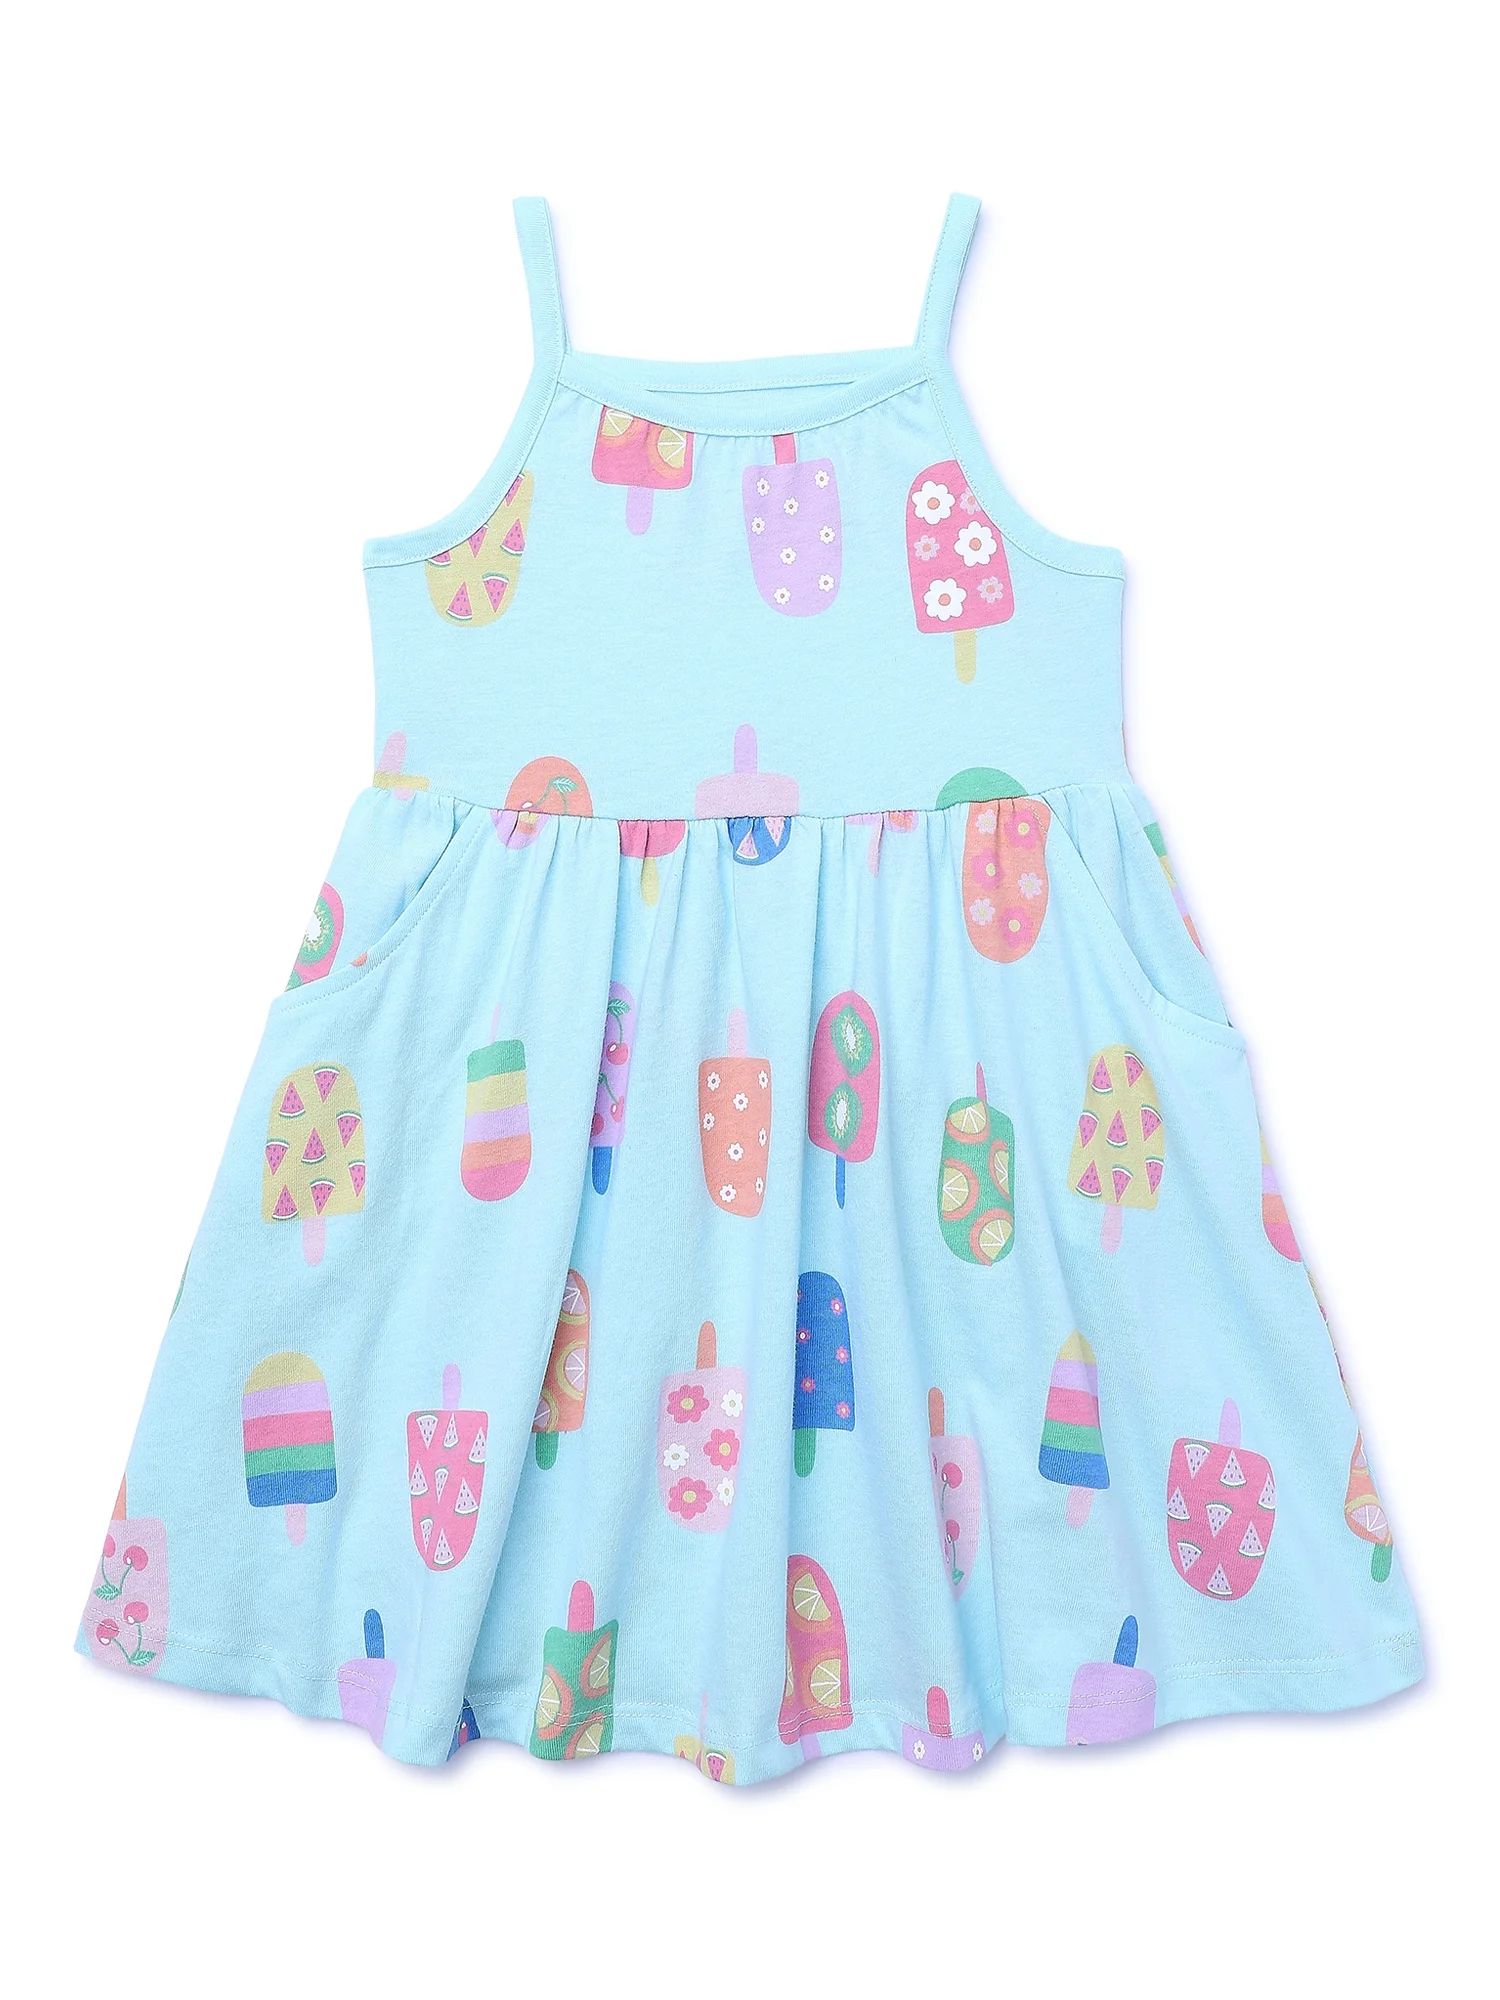 Garanimals Toddler Girl Print Jersey Tank Dress, Sizes 12M-5T | Walmart (US)